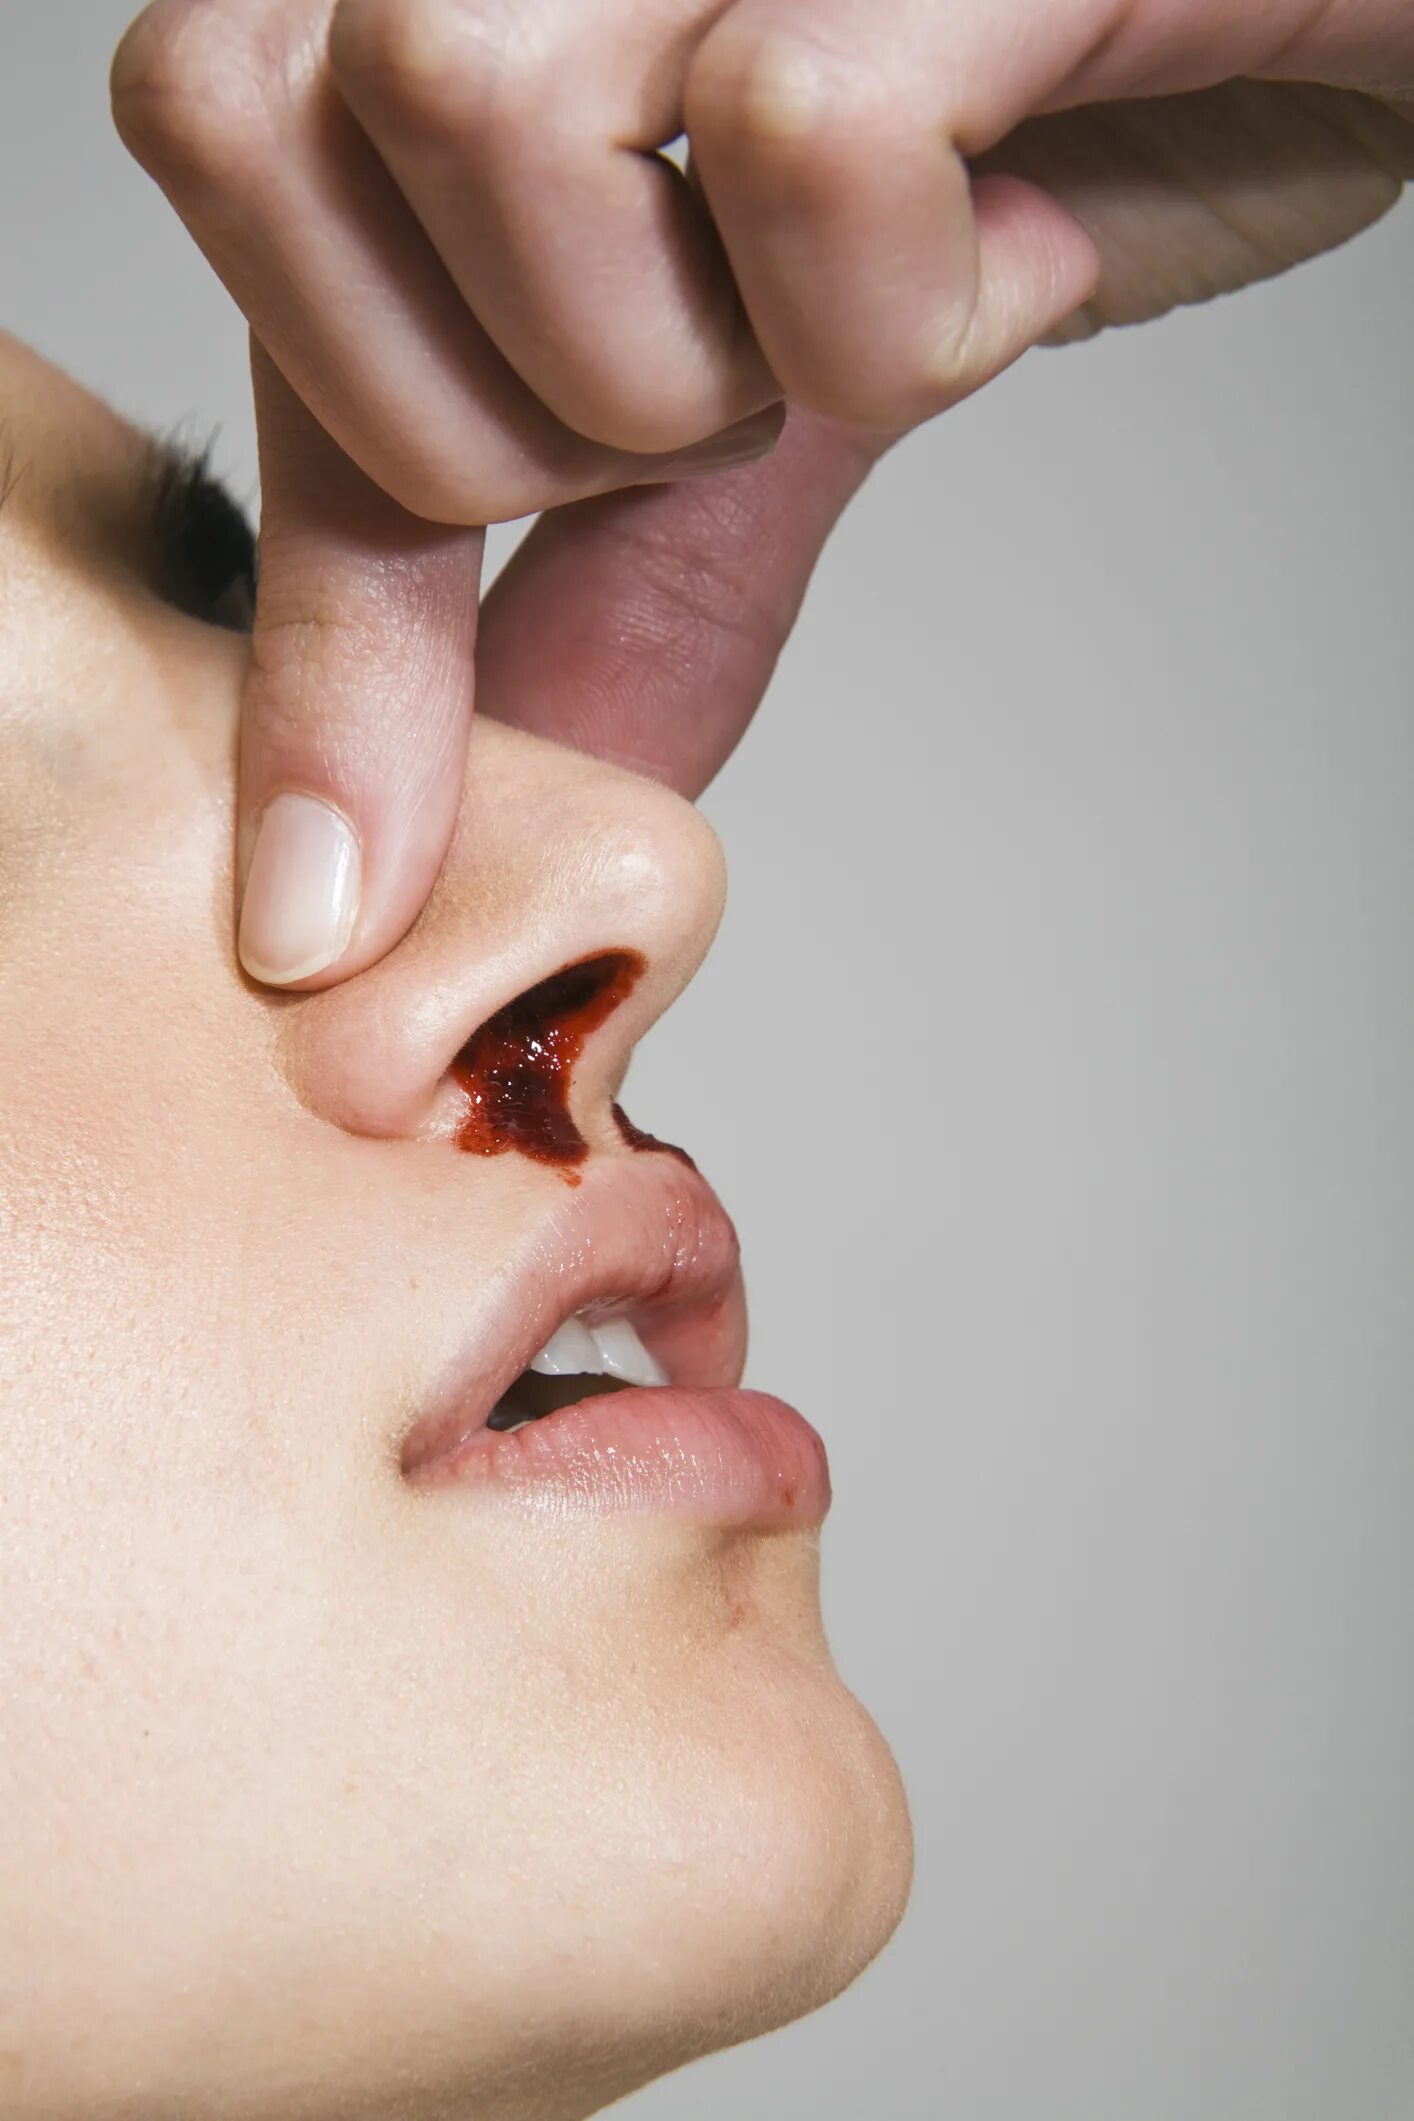 Нососовое кровотечение. Эпистаксис – носовое кровотечение.. Кровь из носа правая ноздря